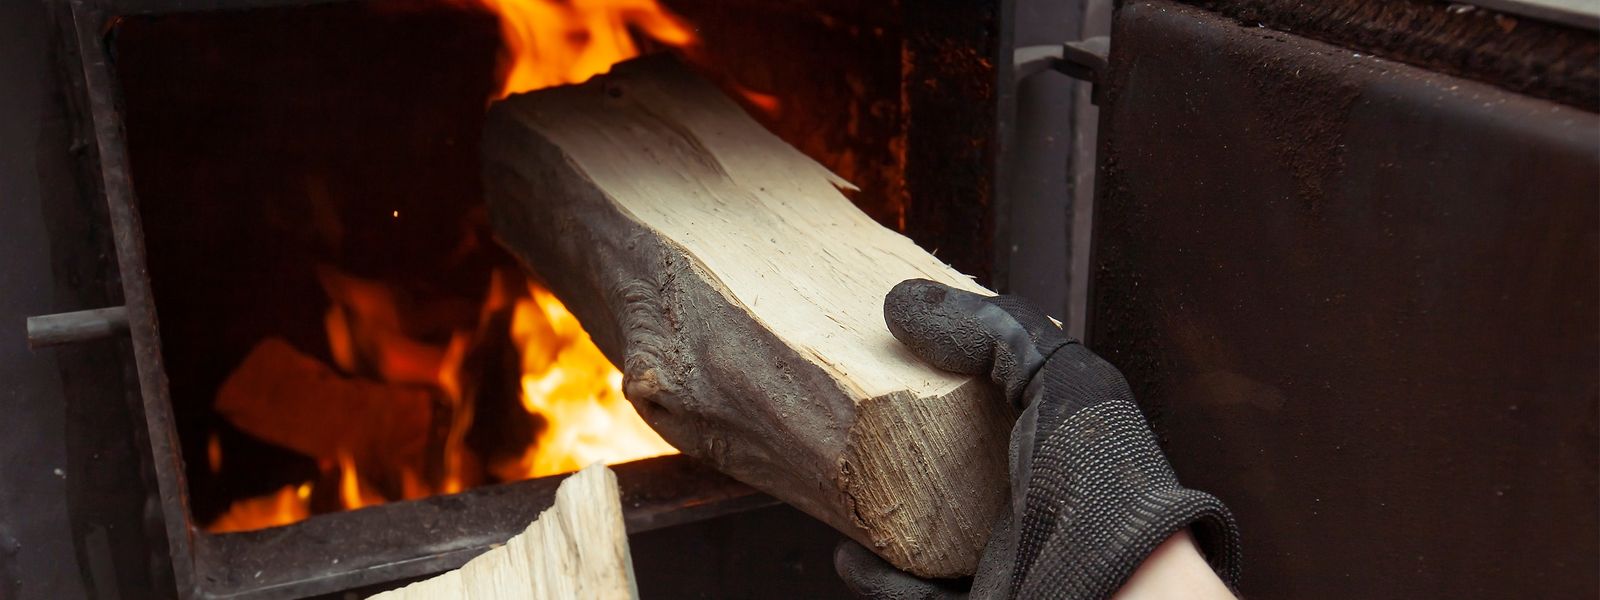 Plus populaire que les pellets de bois si l'on en croit les ramoneurs, le bois de chauffage se fait à présent plus rare au Luxembourg, avec un prix ayant doublé par rapport à 2021.